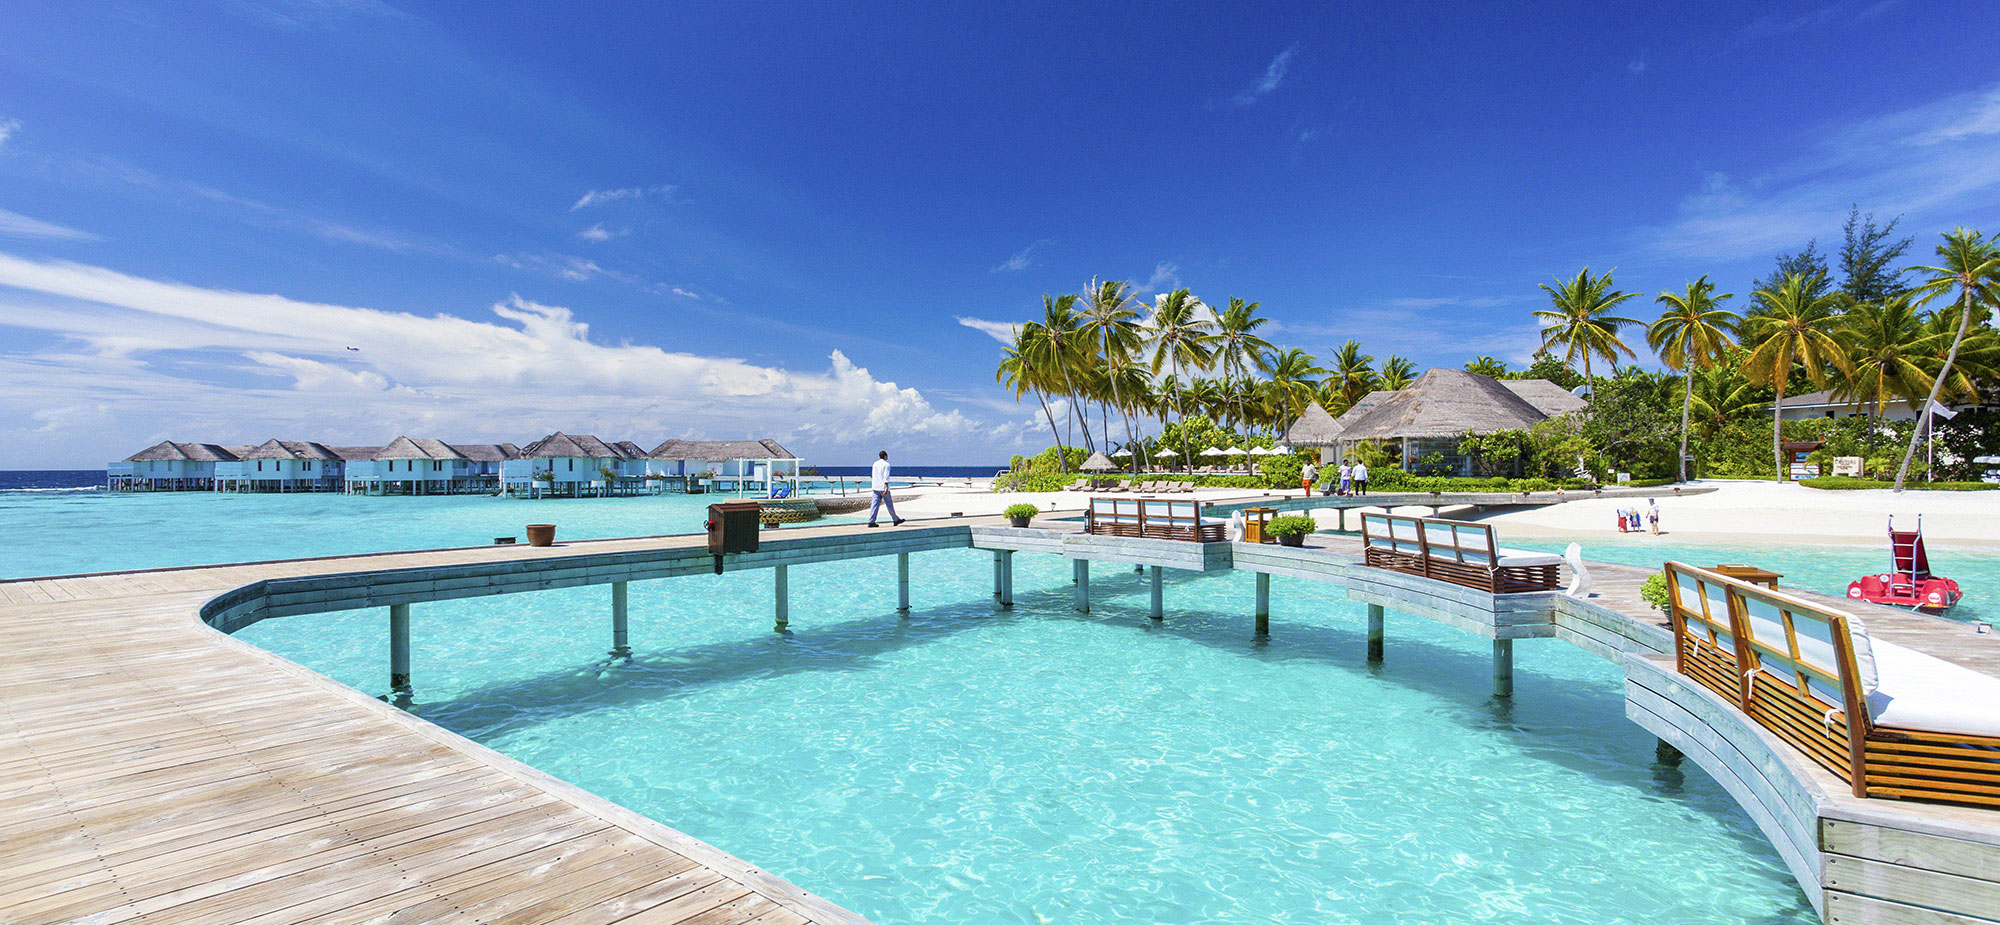 Our Favorite AllInclusive 5Star Maldives Resorts  The 